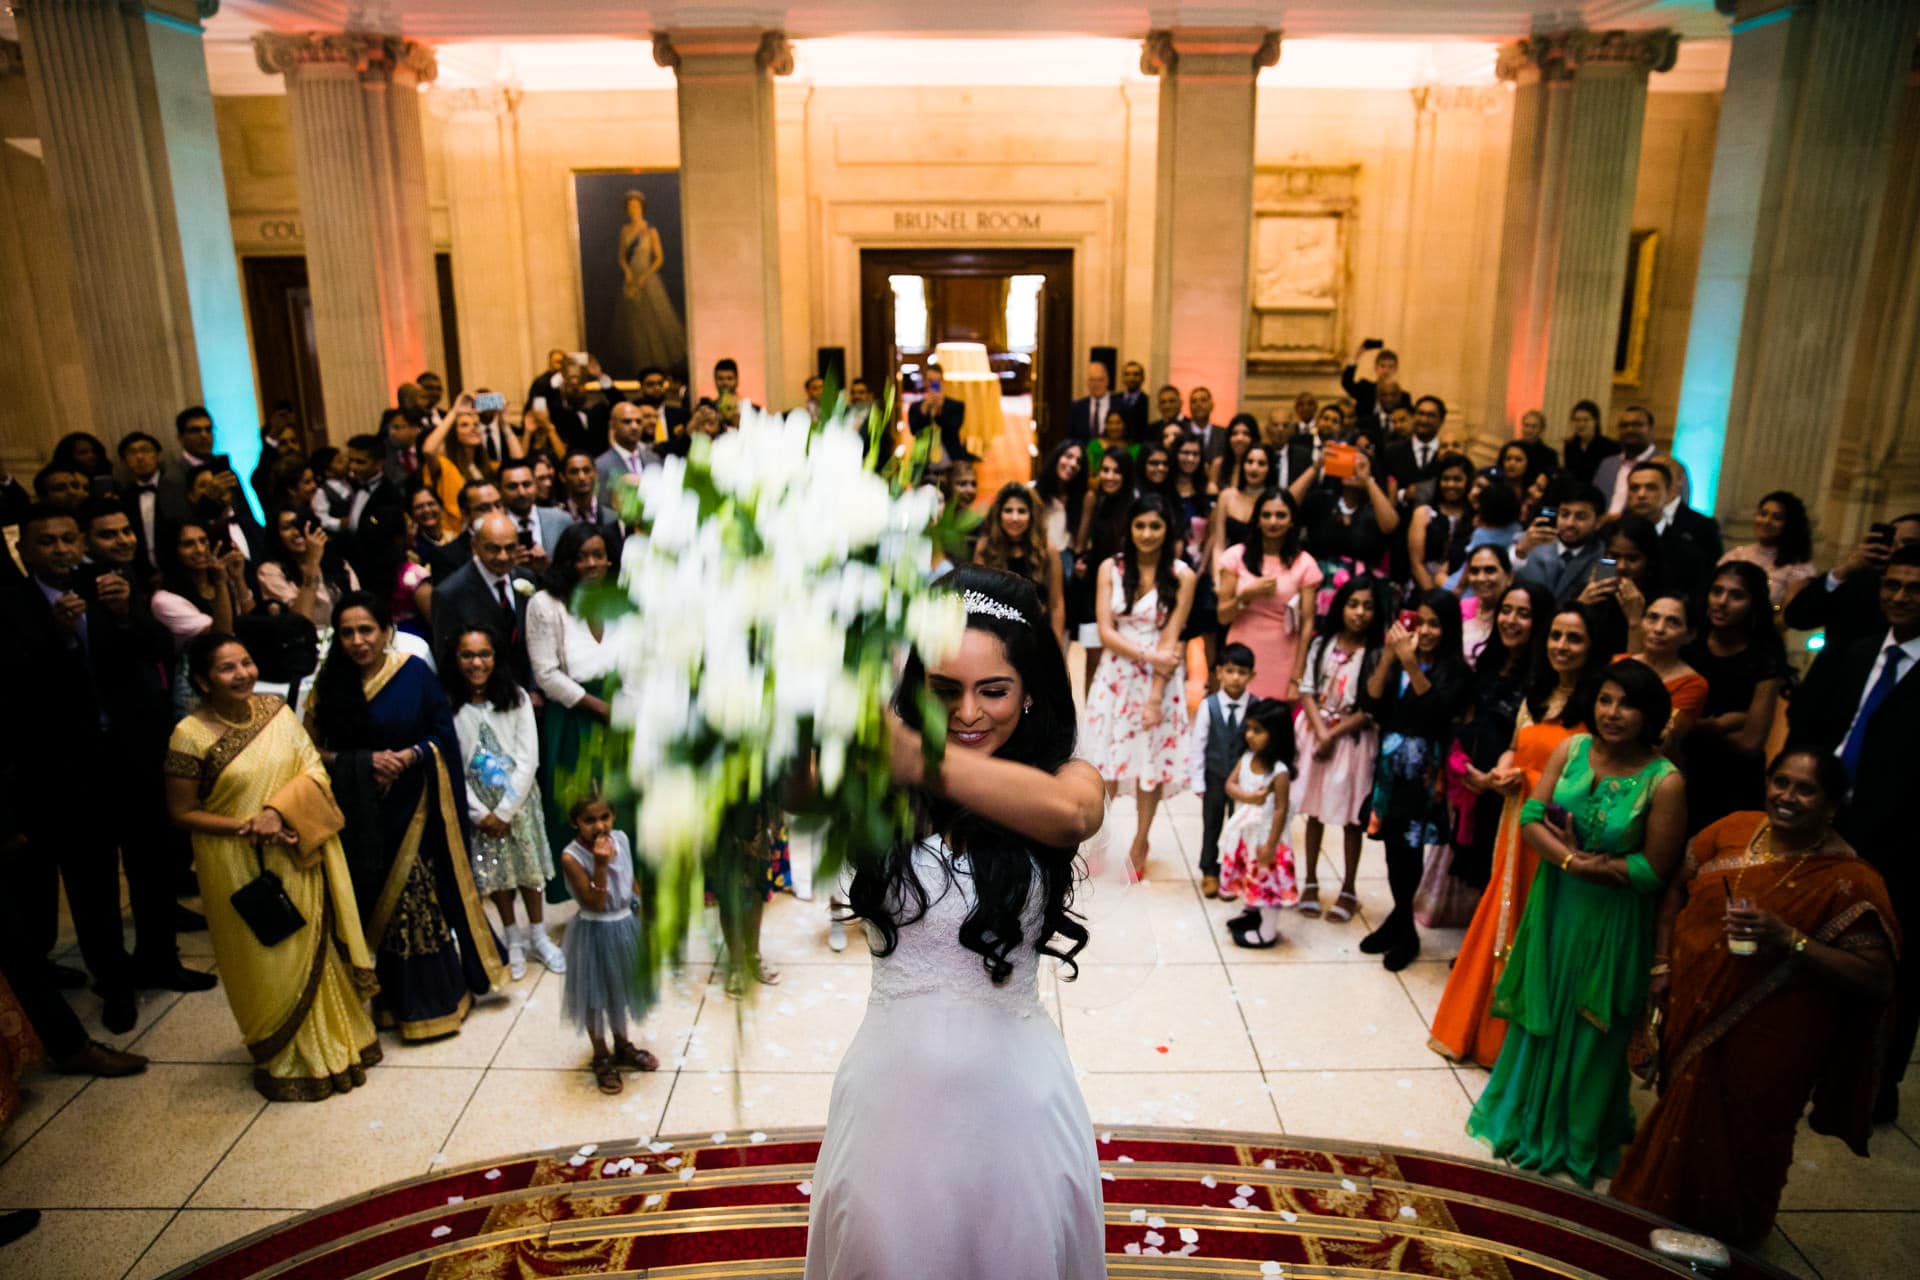 Bride throwing her bouquet